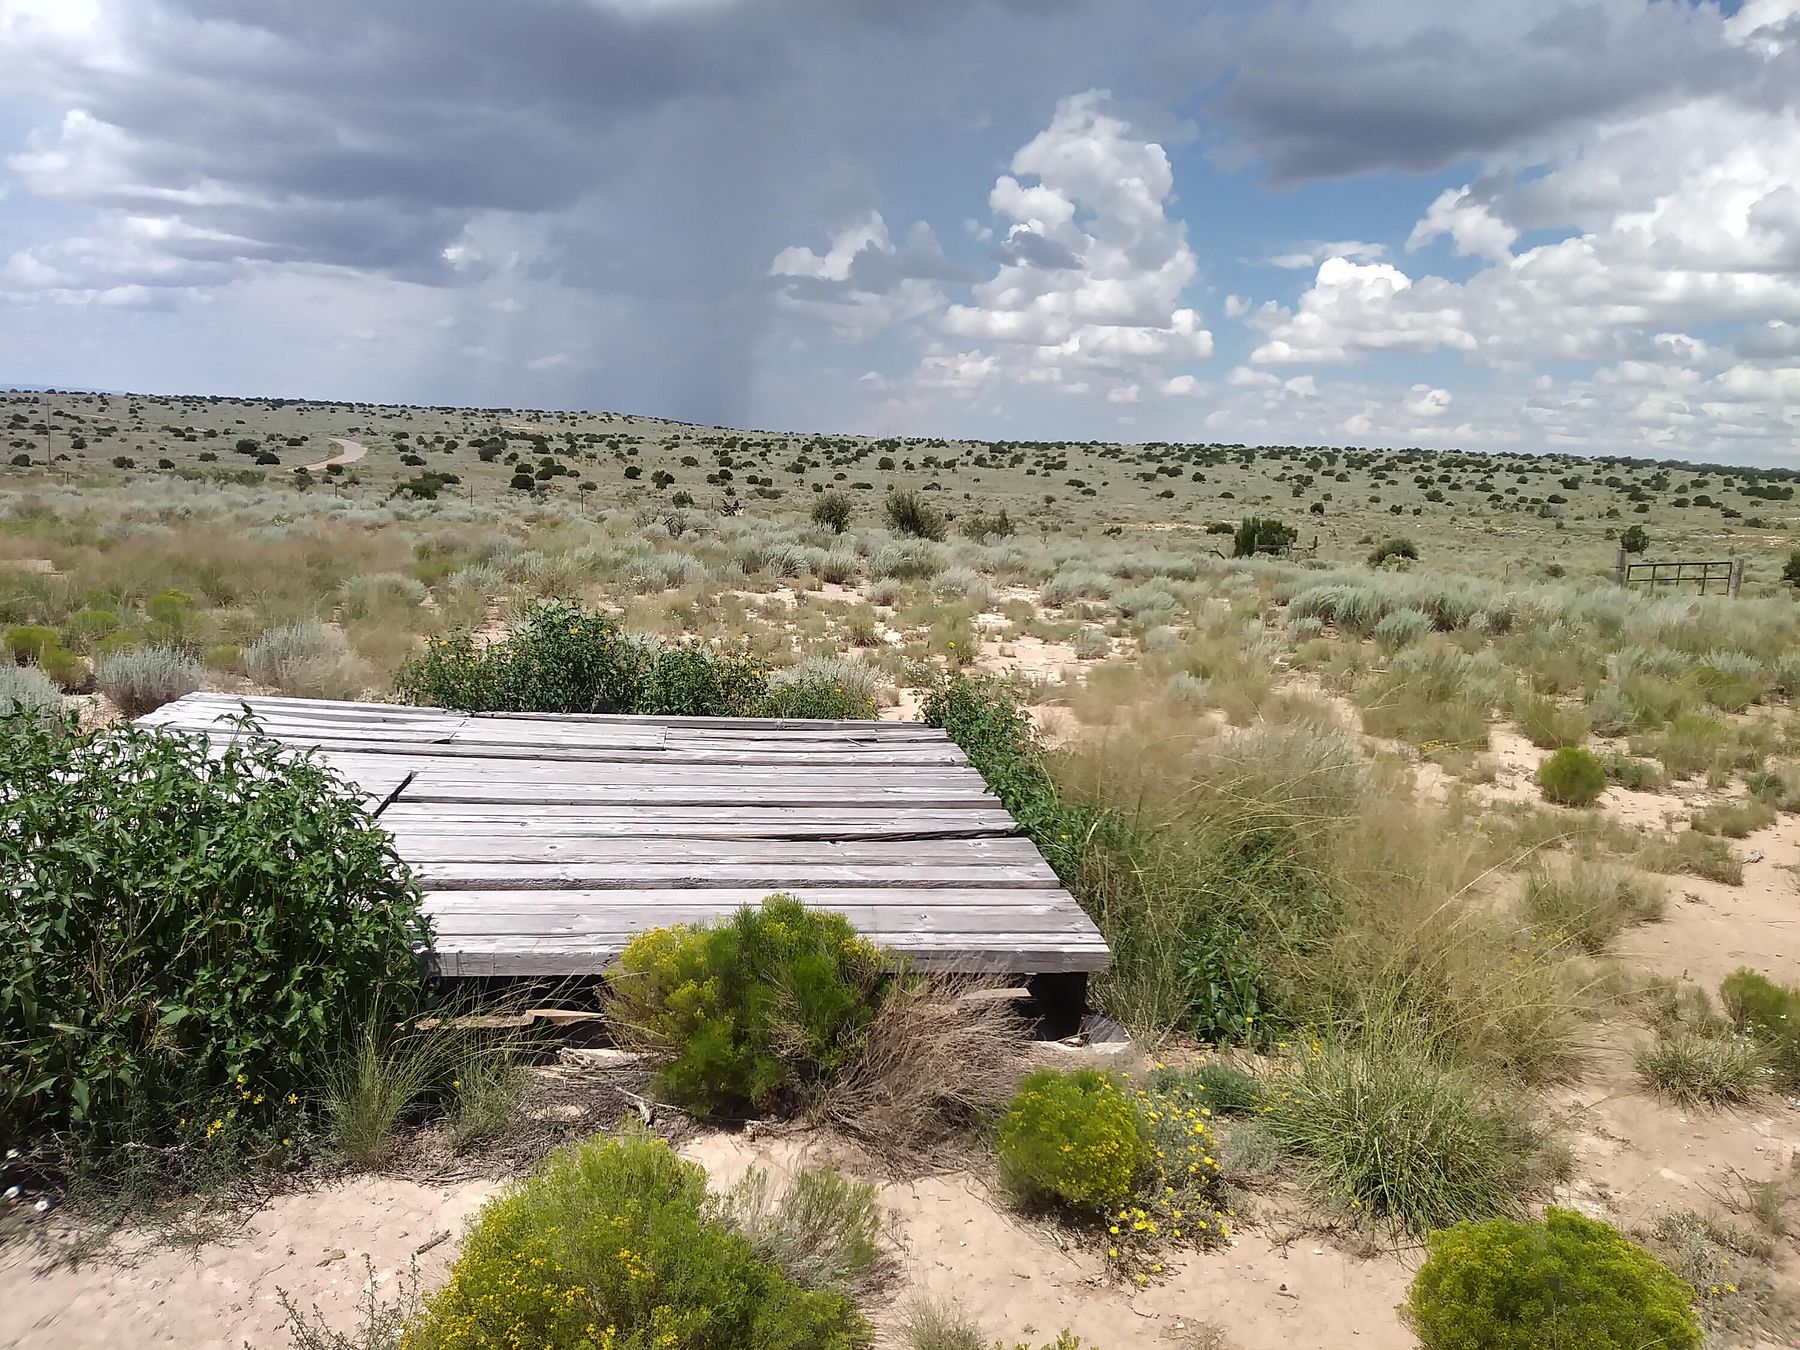 30 Acres of Land Corona, New Mexico, NM